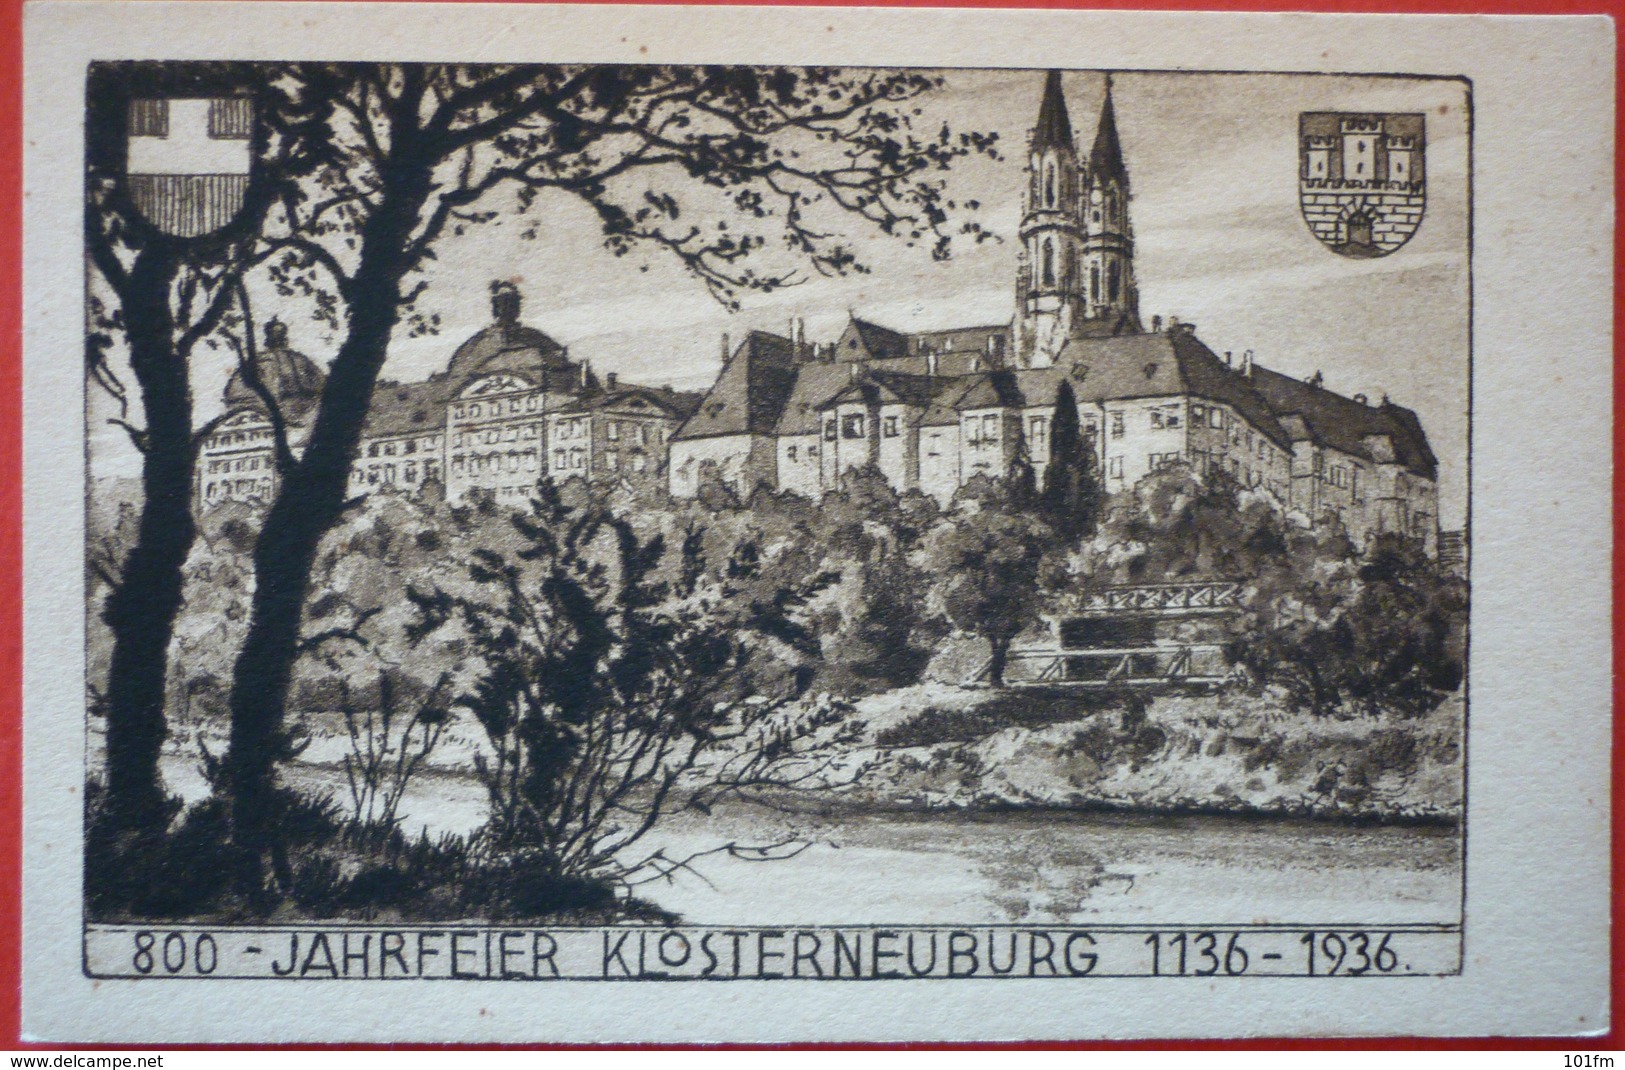 800 JAHRFEIER KLOSTERNEUBURG 1136 - 1936 - Klosterneuburg